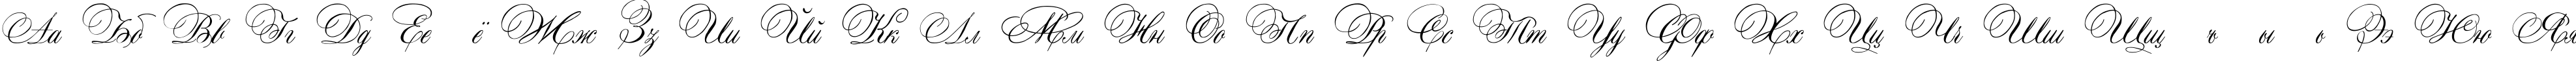 Пример написания русского алфавита шрифтом Aurora Script